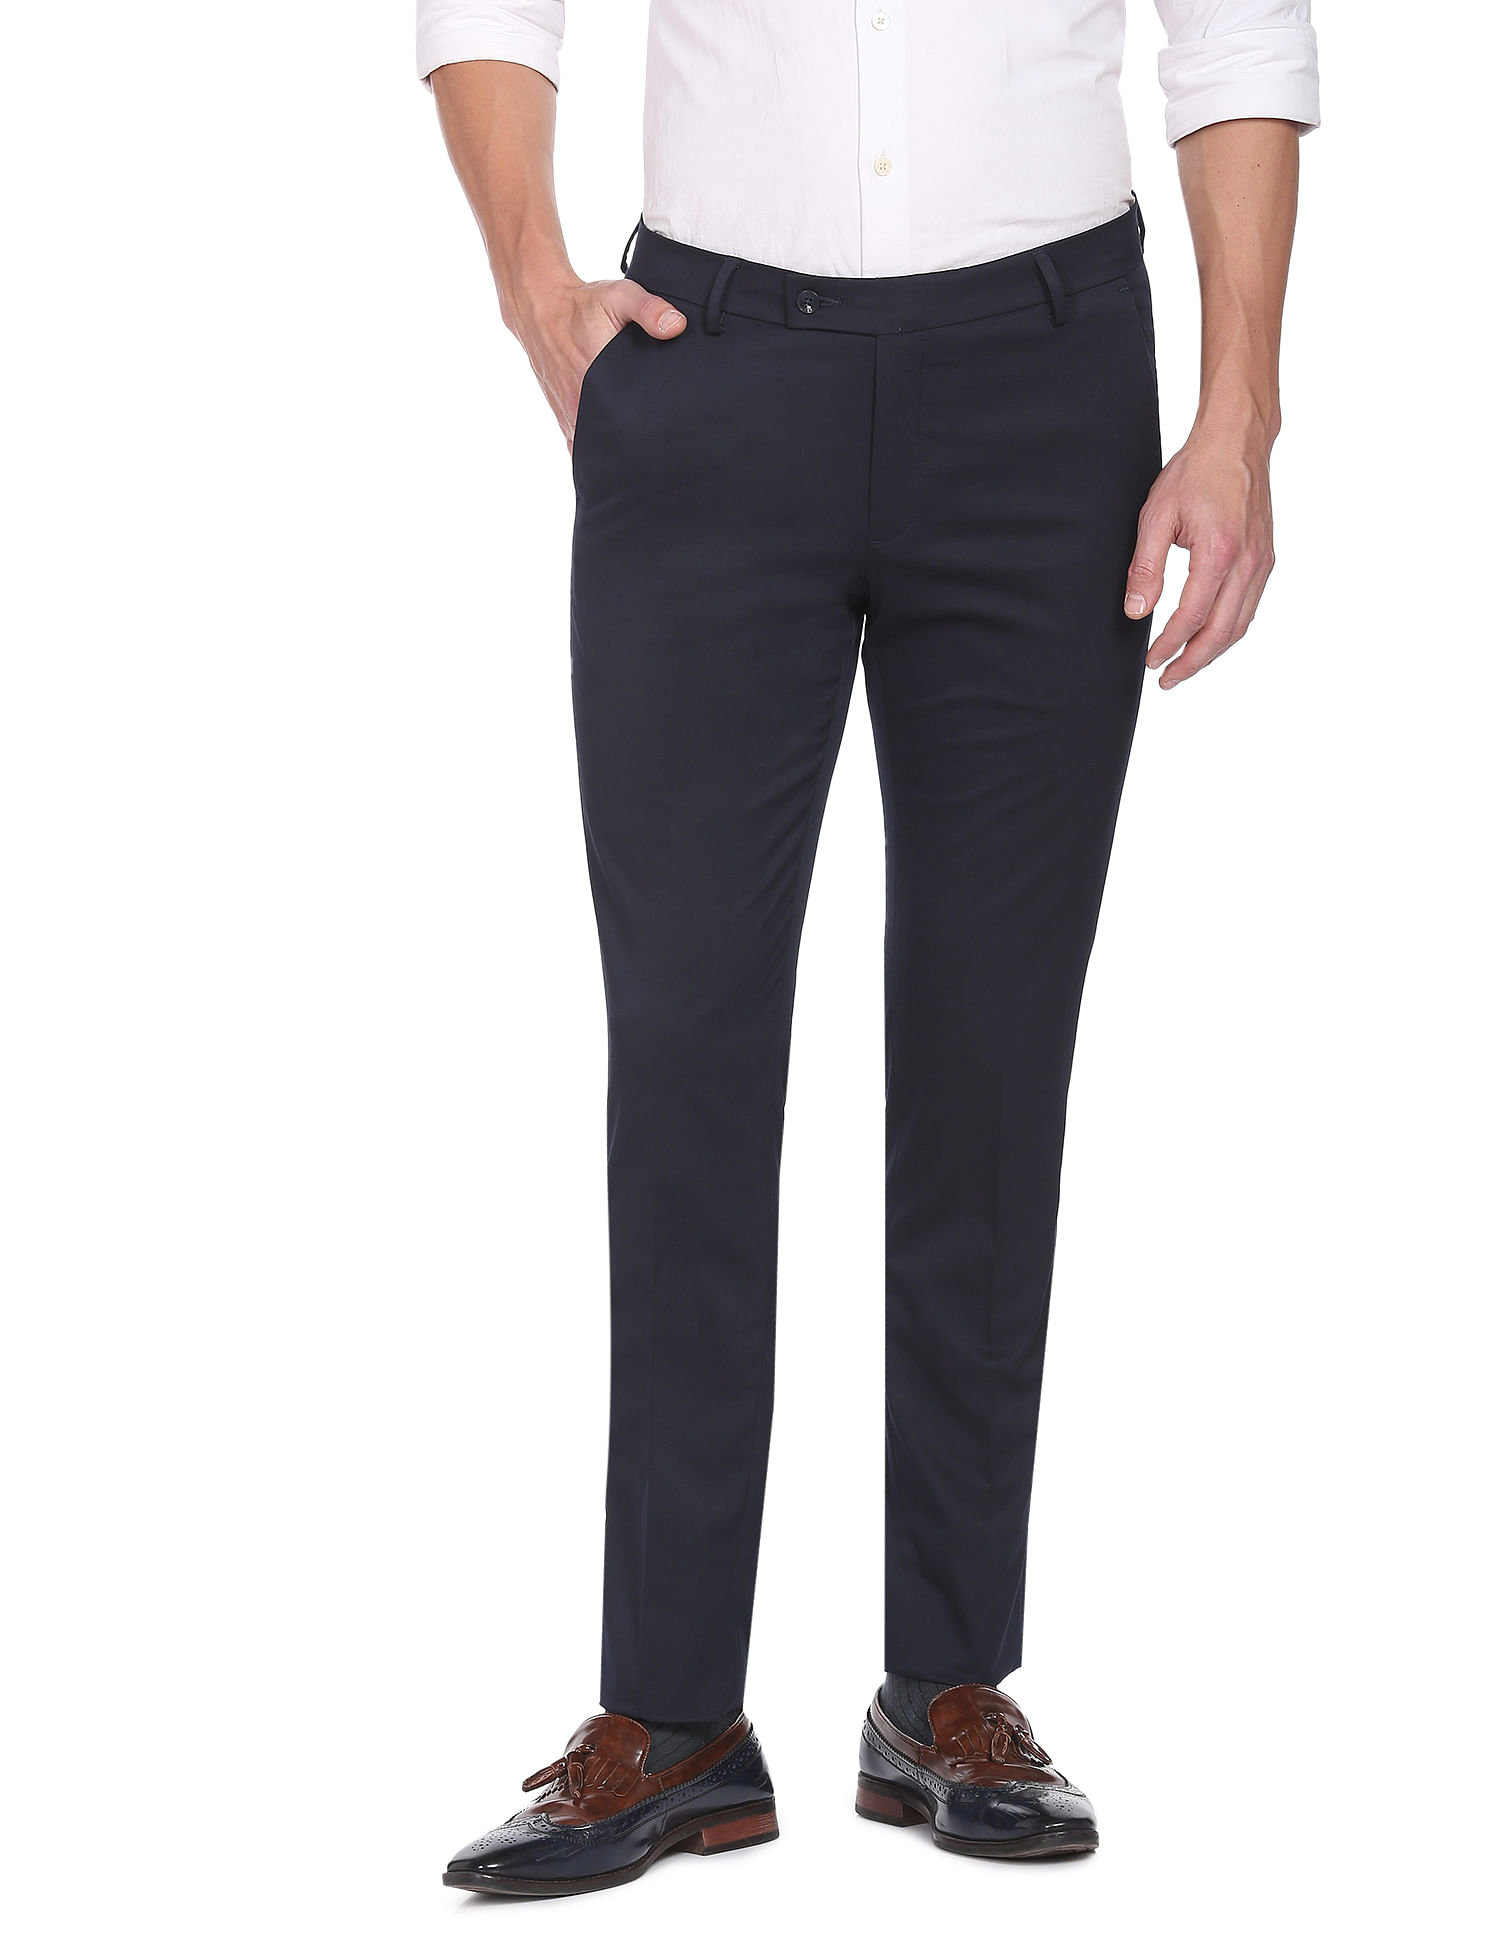 Buy Pesado Mens Cream Slim Fit Polyester Formal Trousers at Amazonin